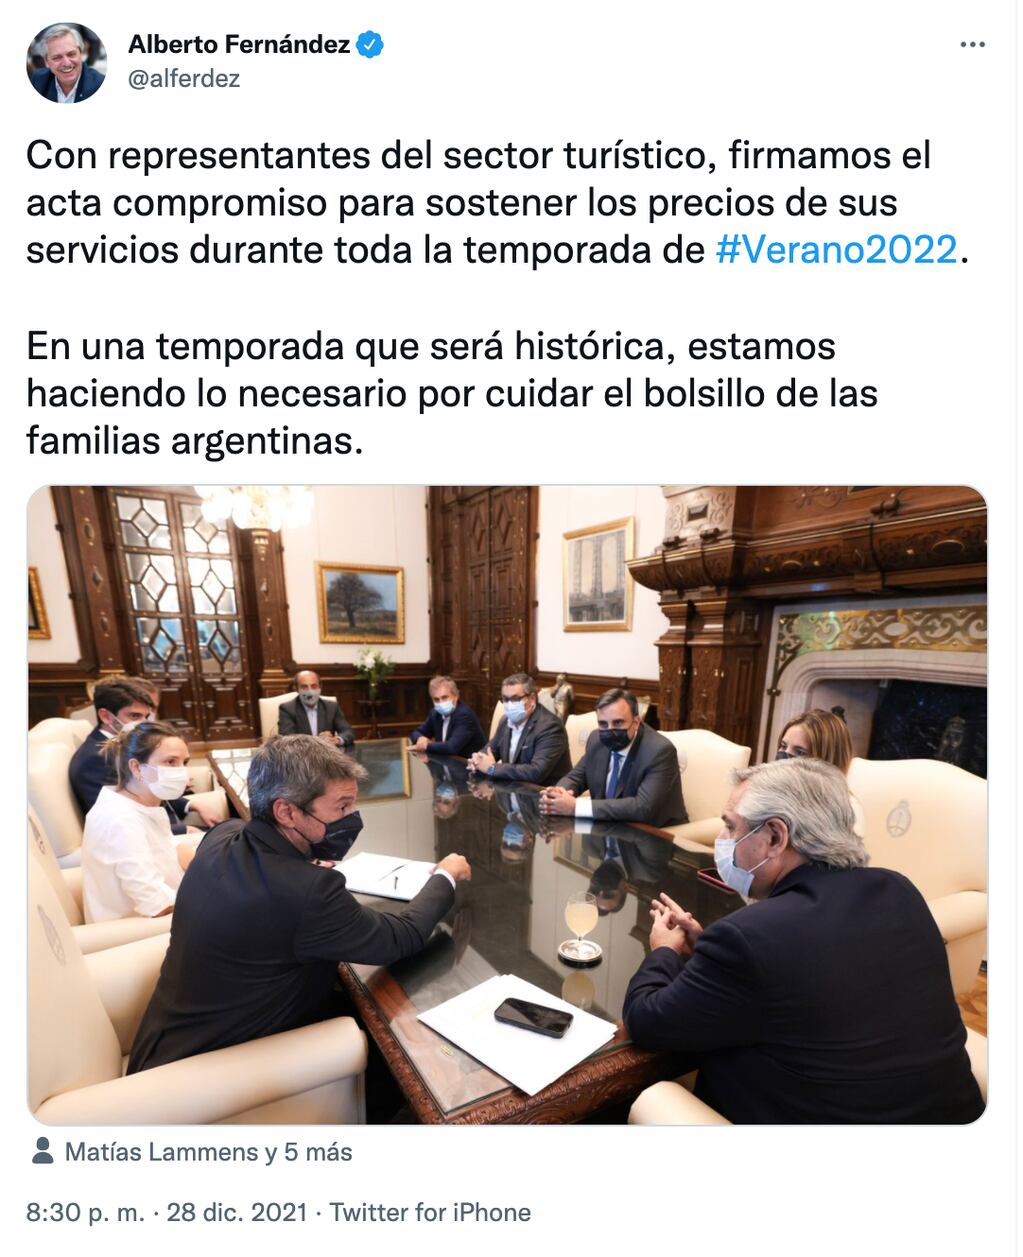 El presidente Alberto Fernández llegó a un acuerdo con el sector turístico para congelar precios en el verano.